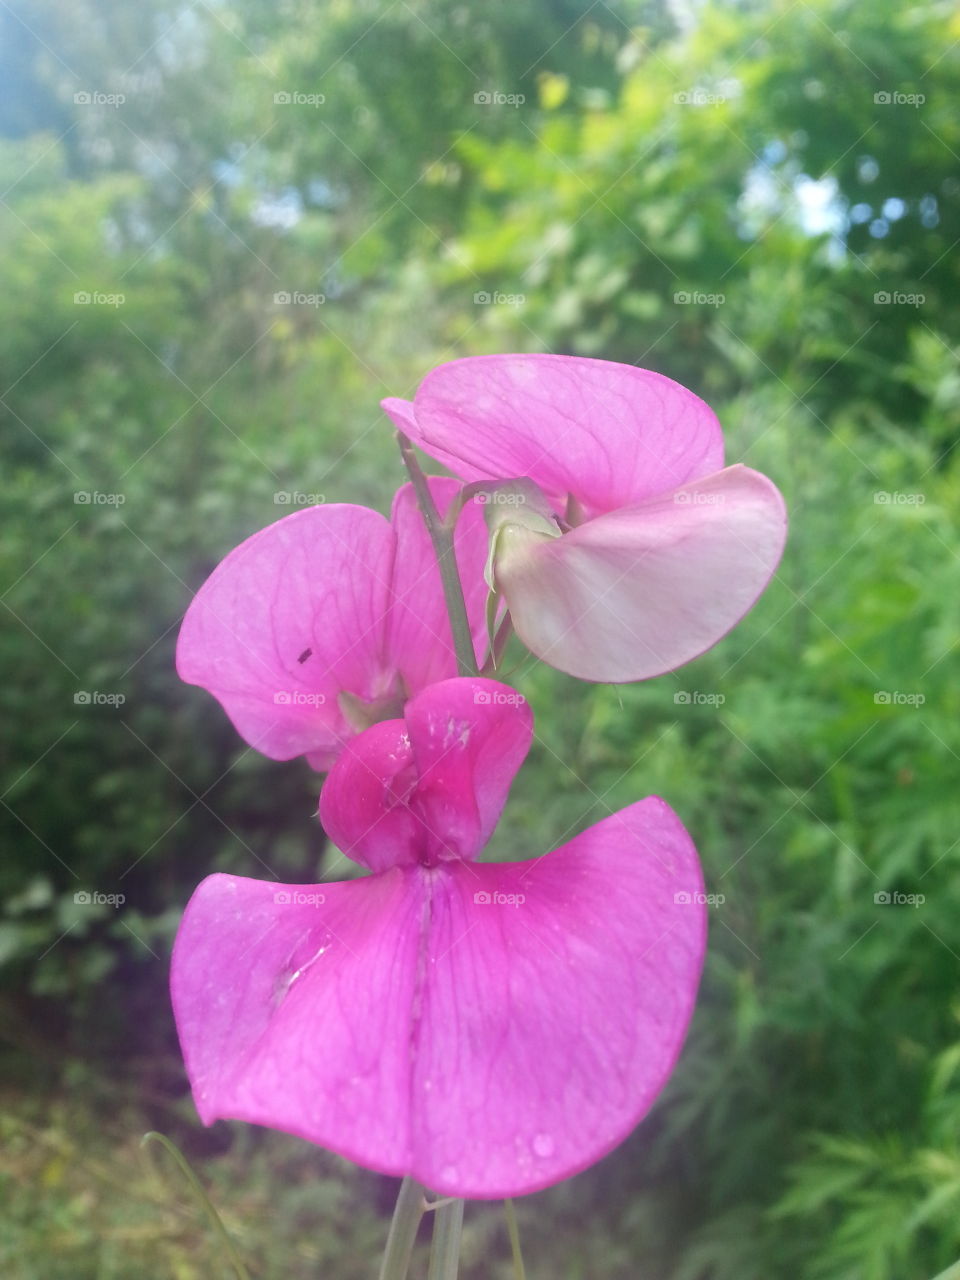 Single Pink Flower. Pink flower in field